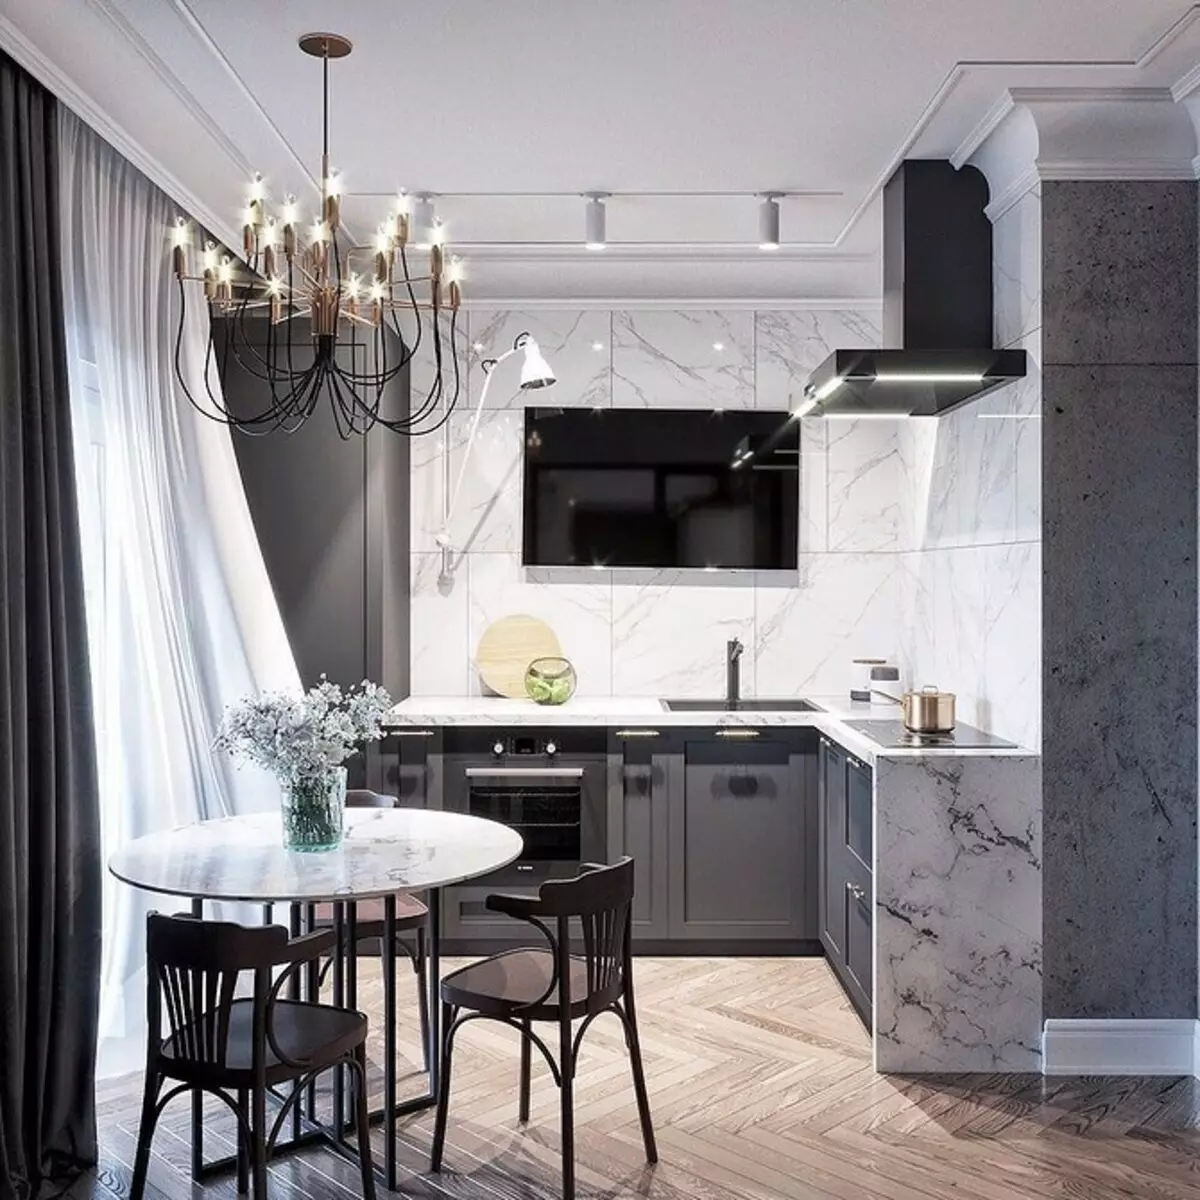 طراحی آشپزخانه سیاه و سفید: 80 کنتراست و ایده های بسیار شیک 8339_163